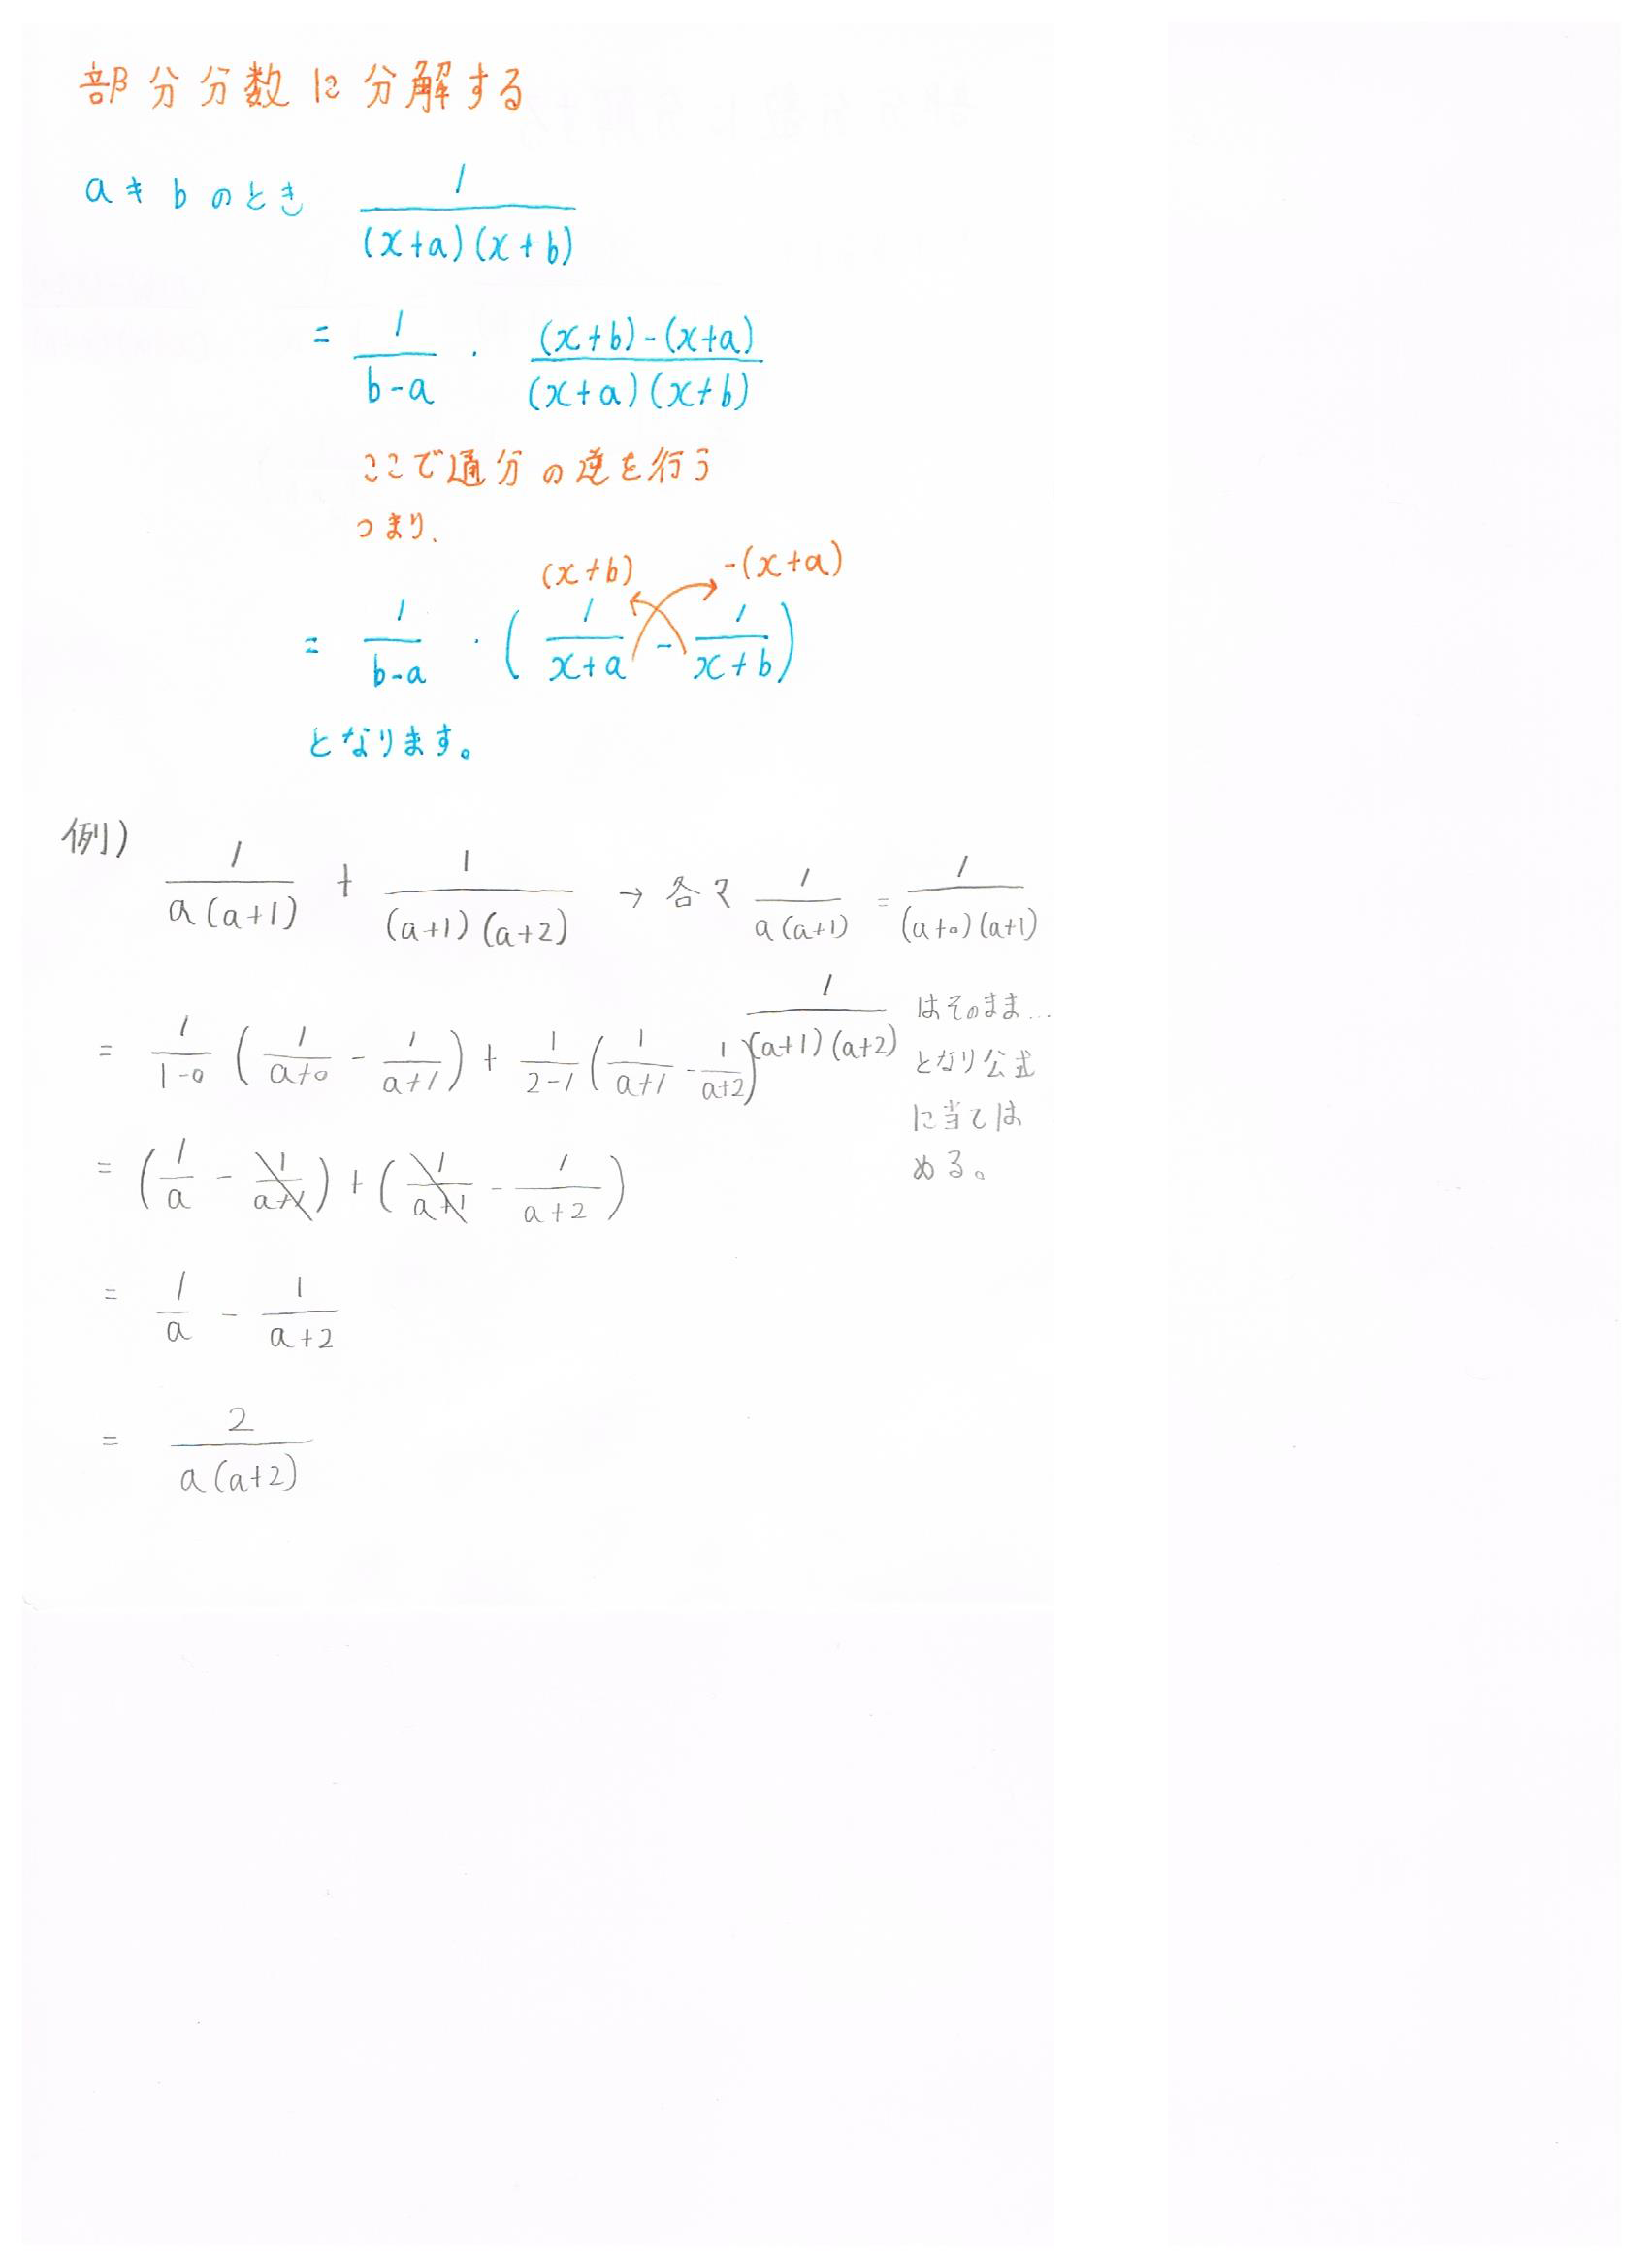 部分分数分解の公式